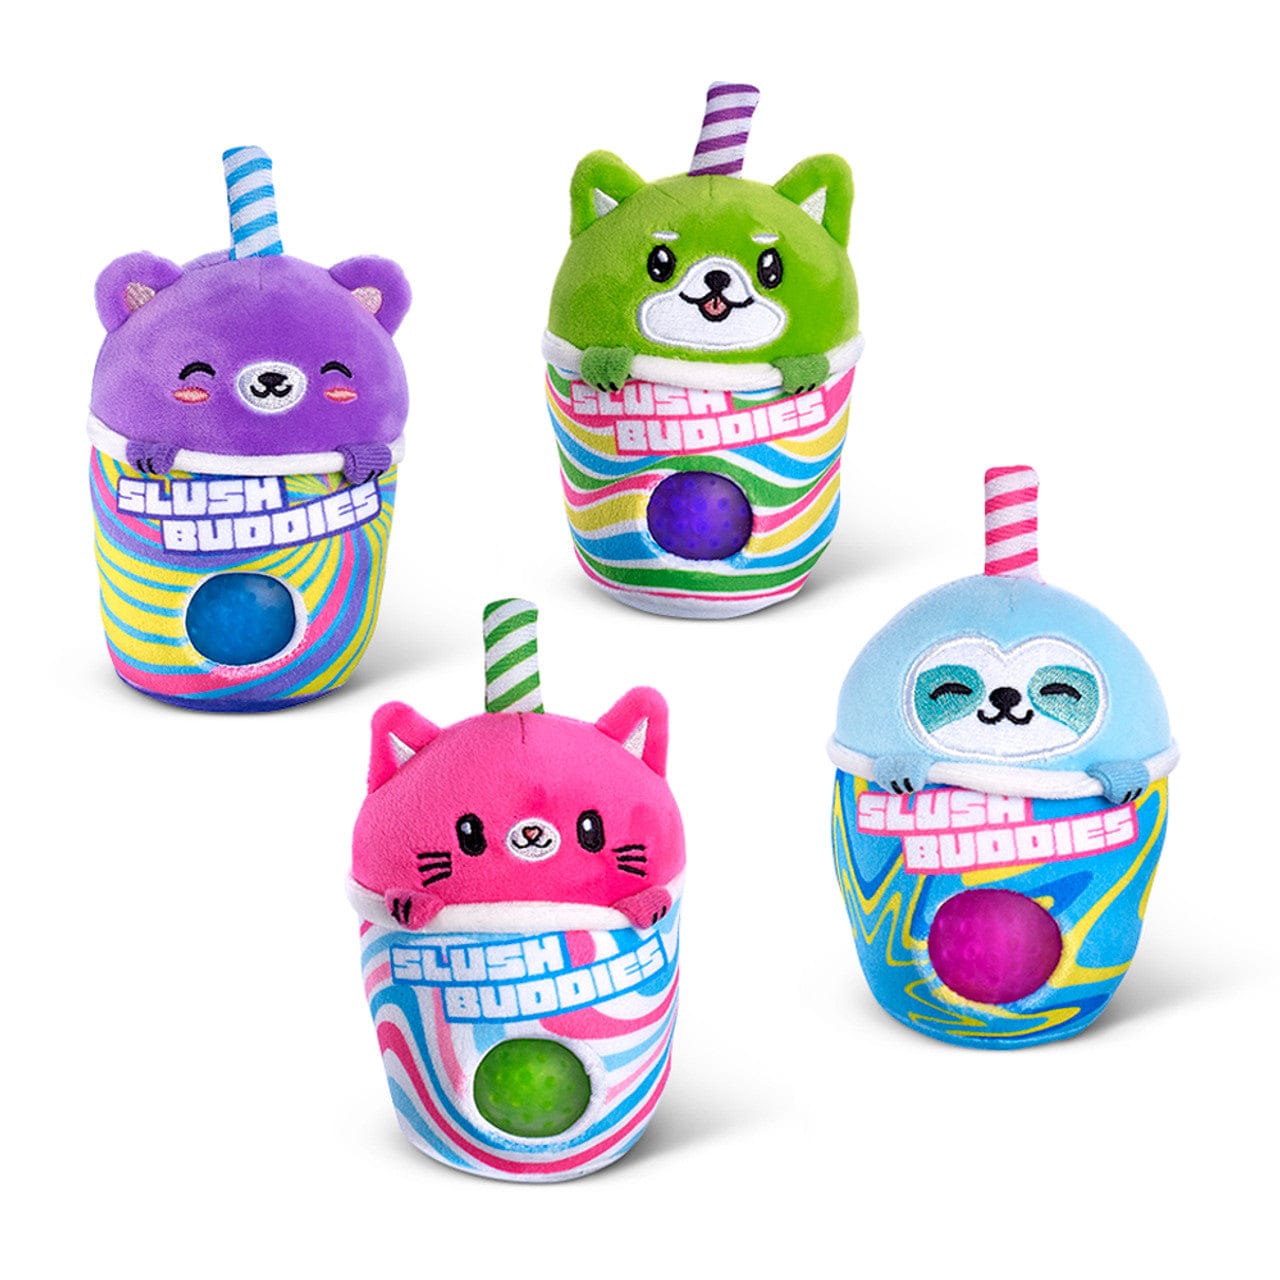 Top Trenz Top Trenz Slush Buddies Beadie Buddies Squishy Toys - Little Miss Muffin Children & Home